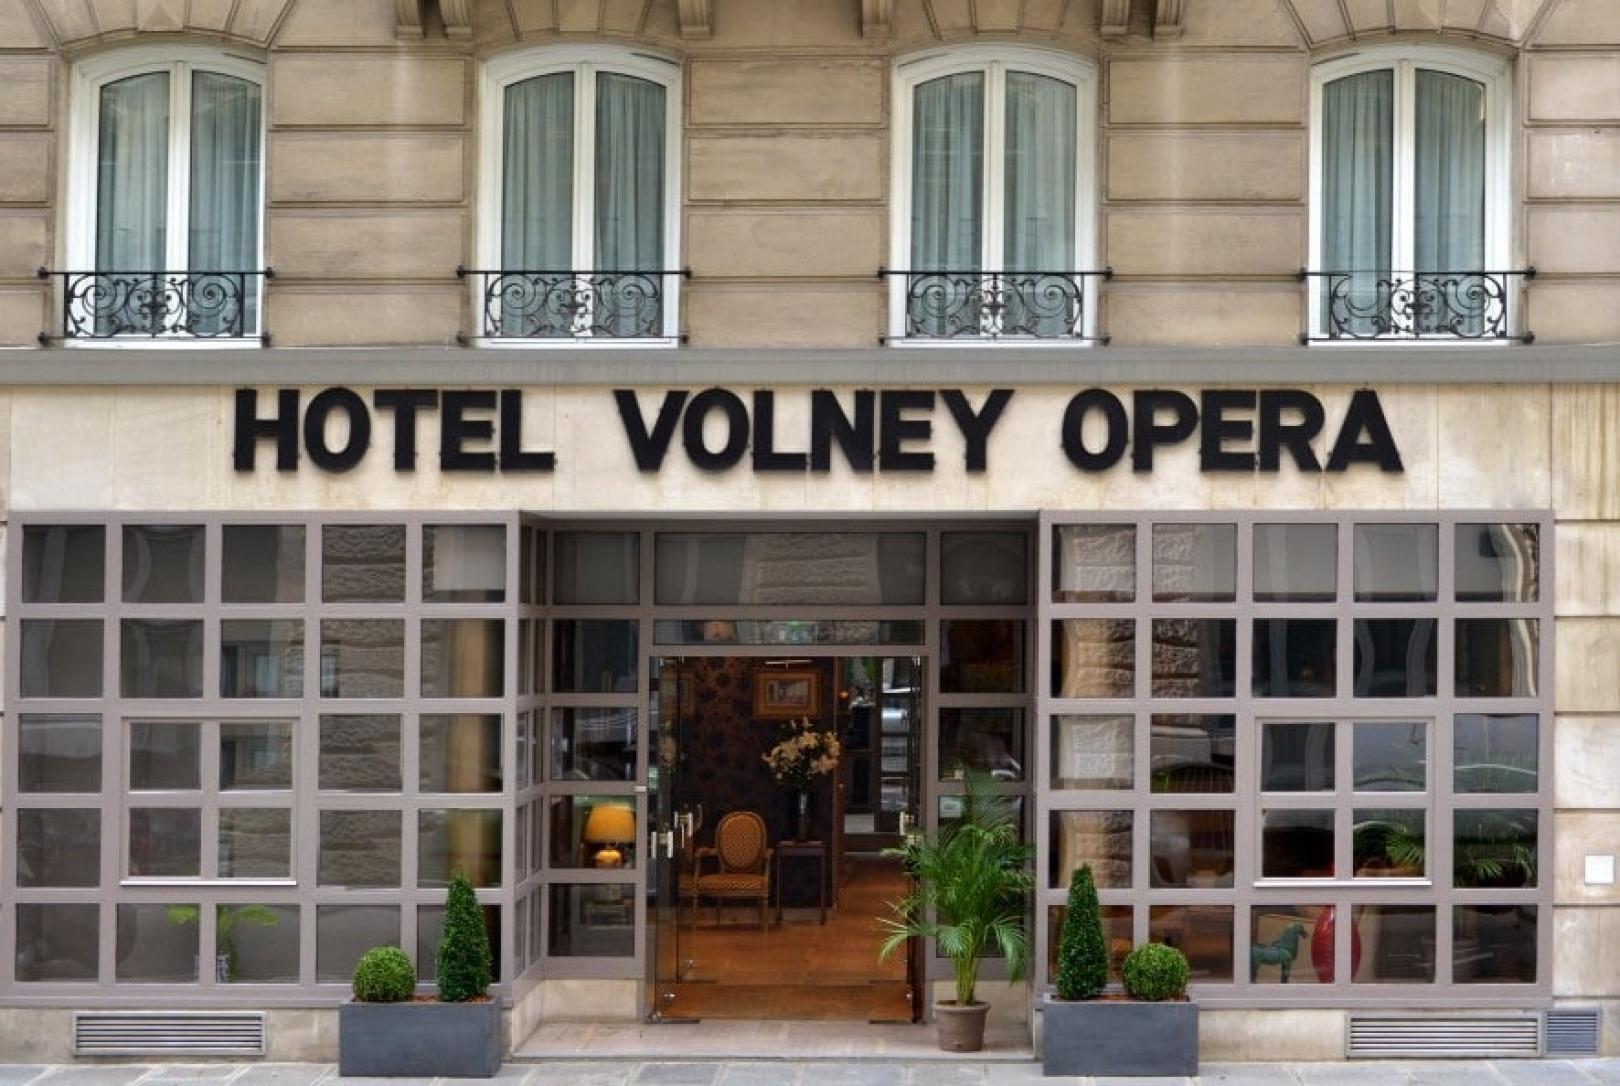 Hotel Volney Opéra - Facade